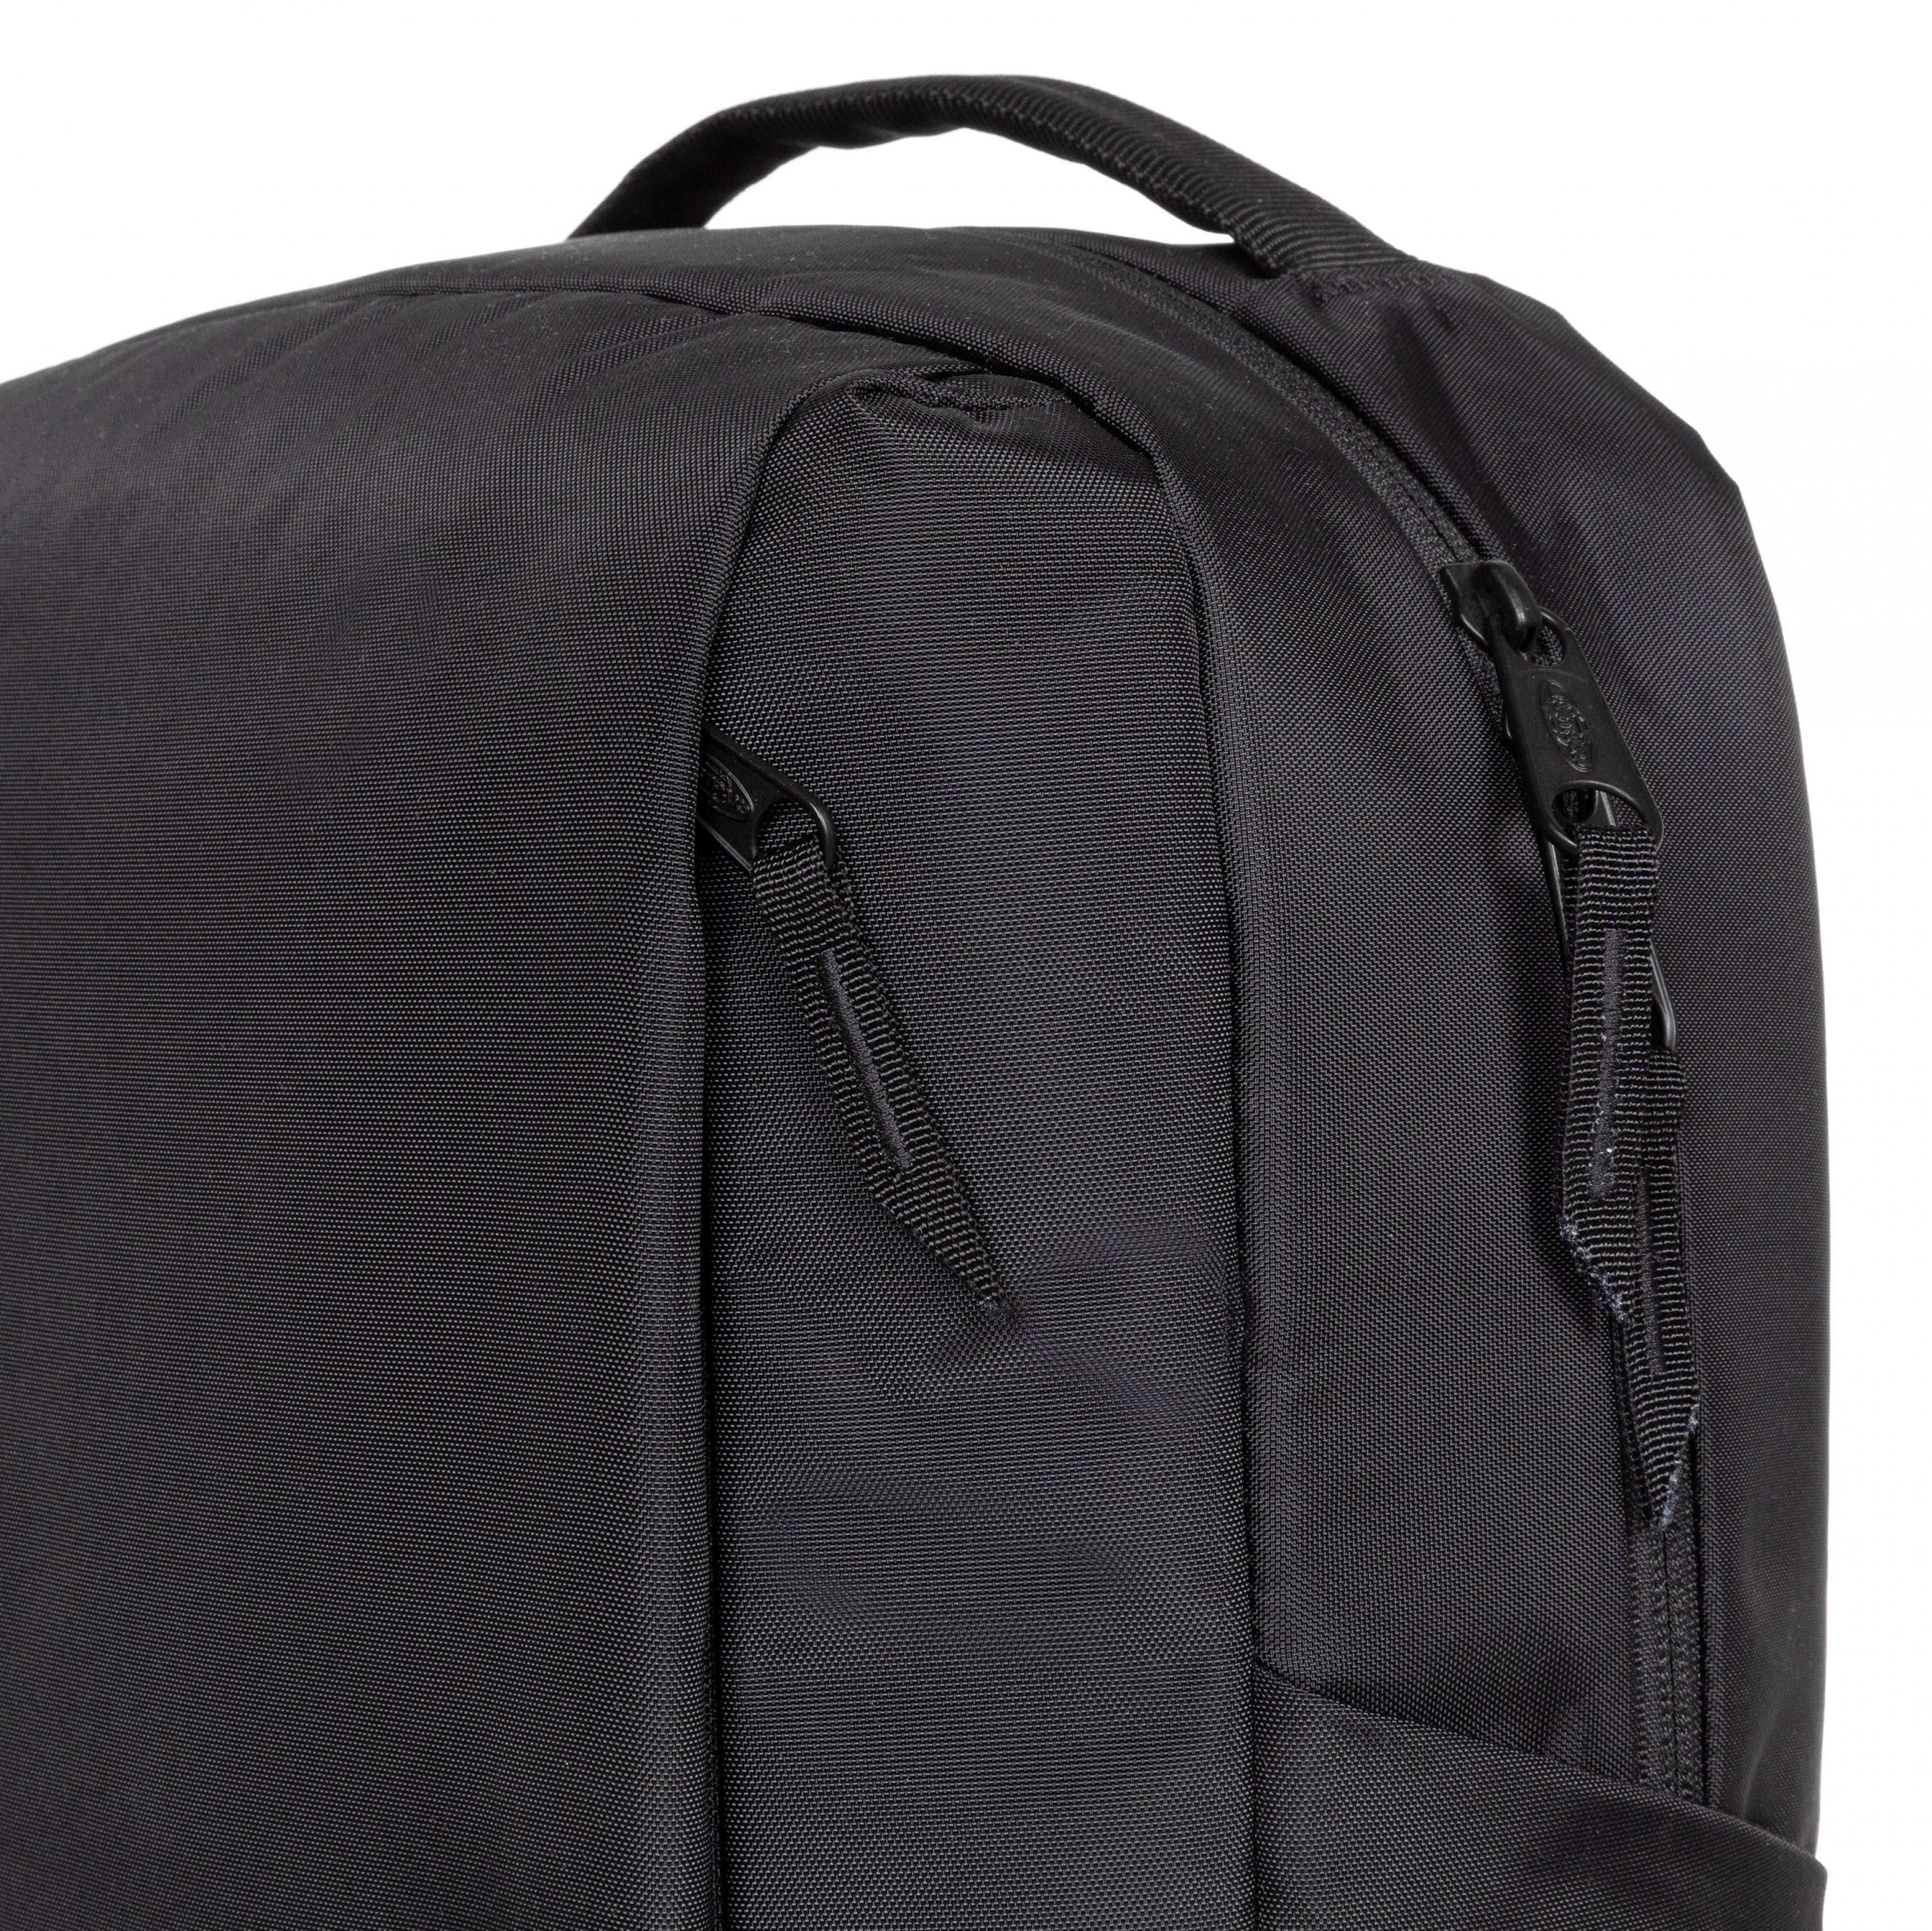 حقيبة ظهر إيستباك-تيكوم إف وسط مع حامل زجاجة وحقيبة لاب توب-CNCT F أسود-EK0A5Be95A21